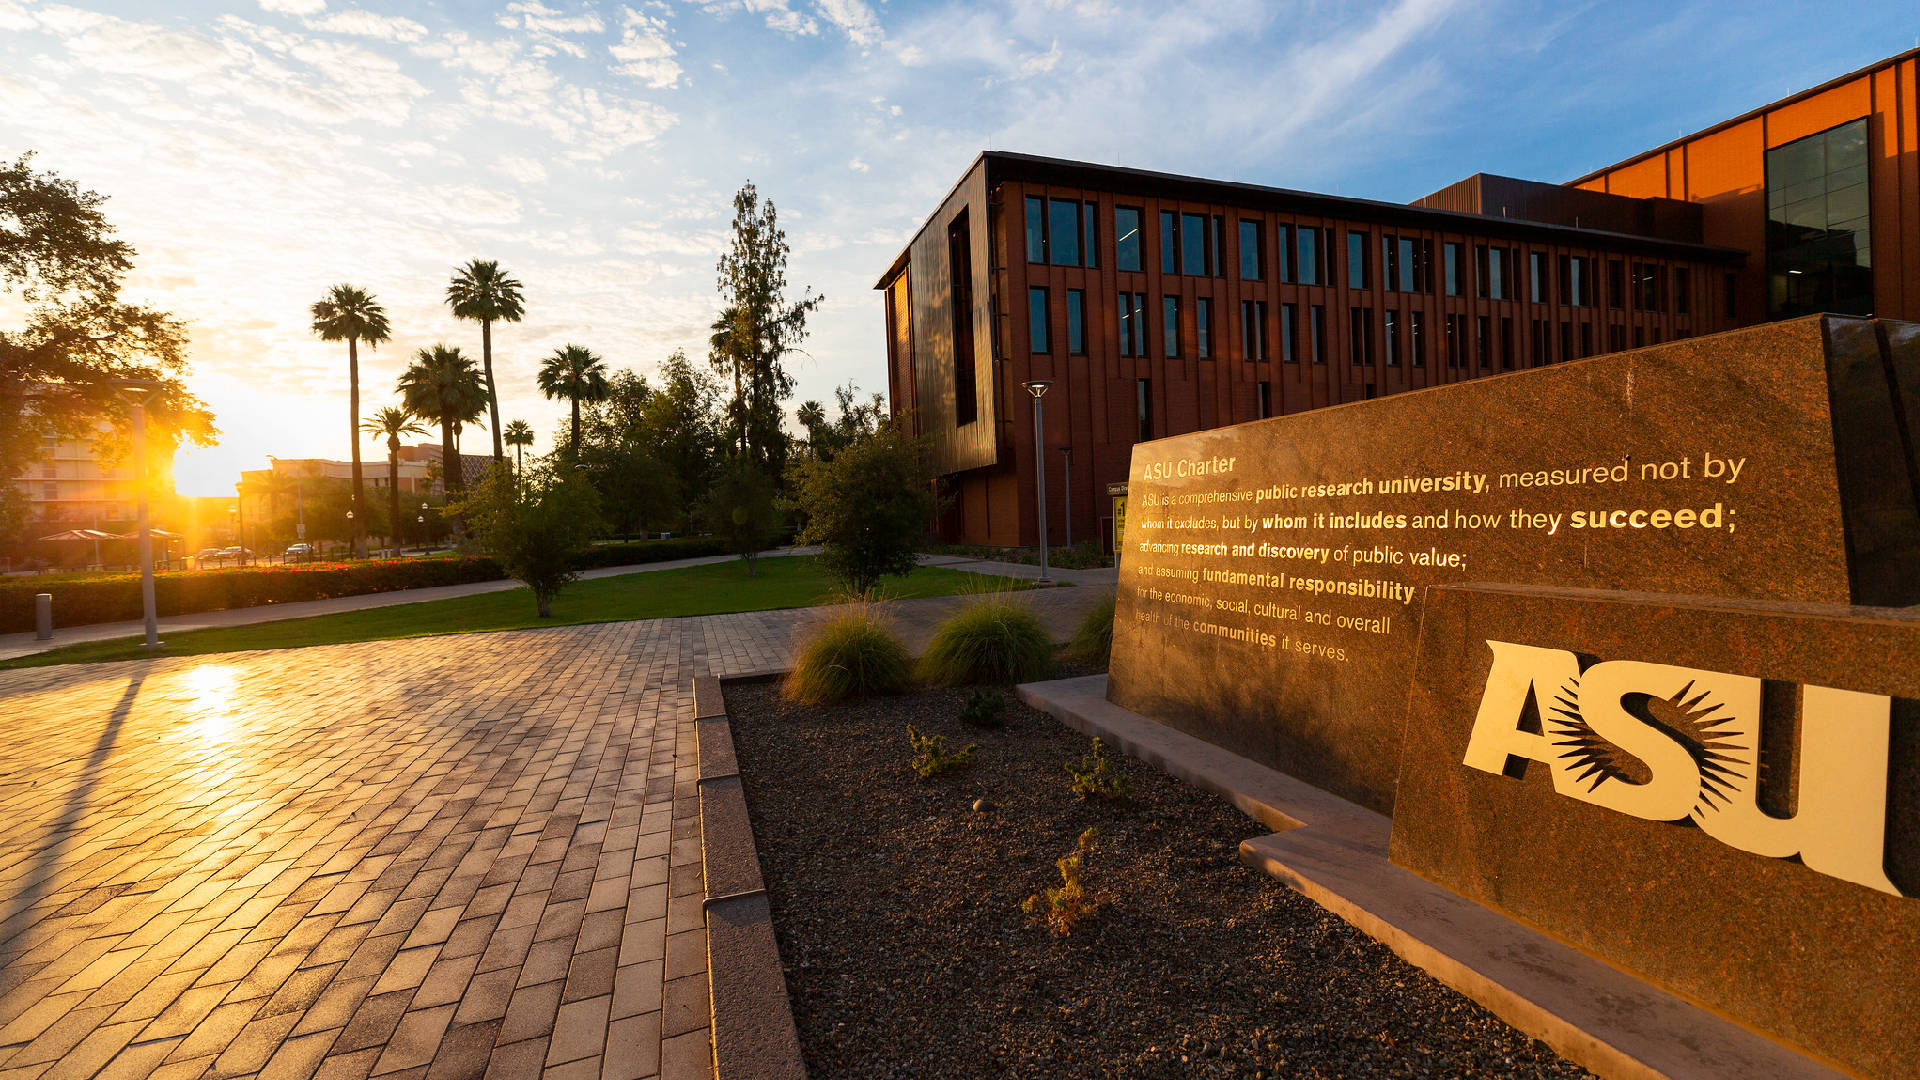 Hermosoedificio De La Universidad Estatal De Arizona. Fondo de pantalla